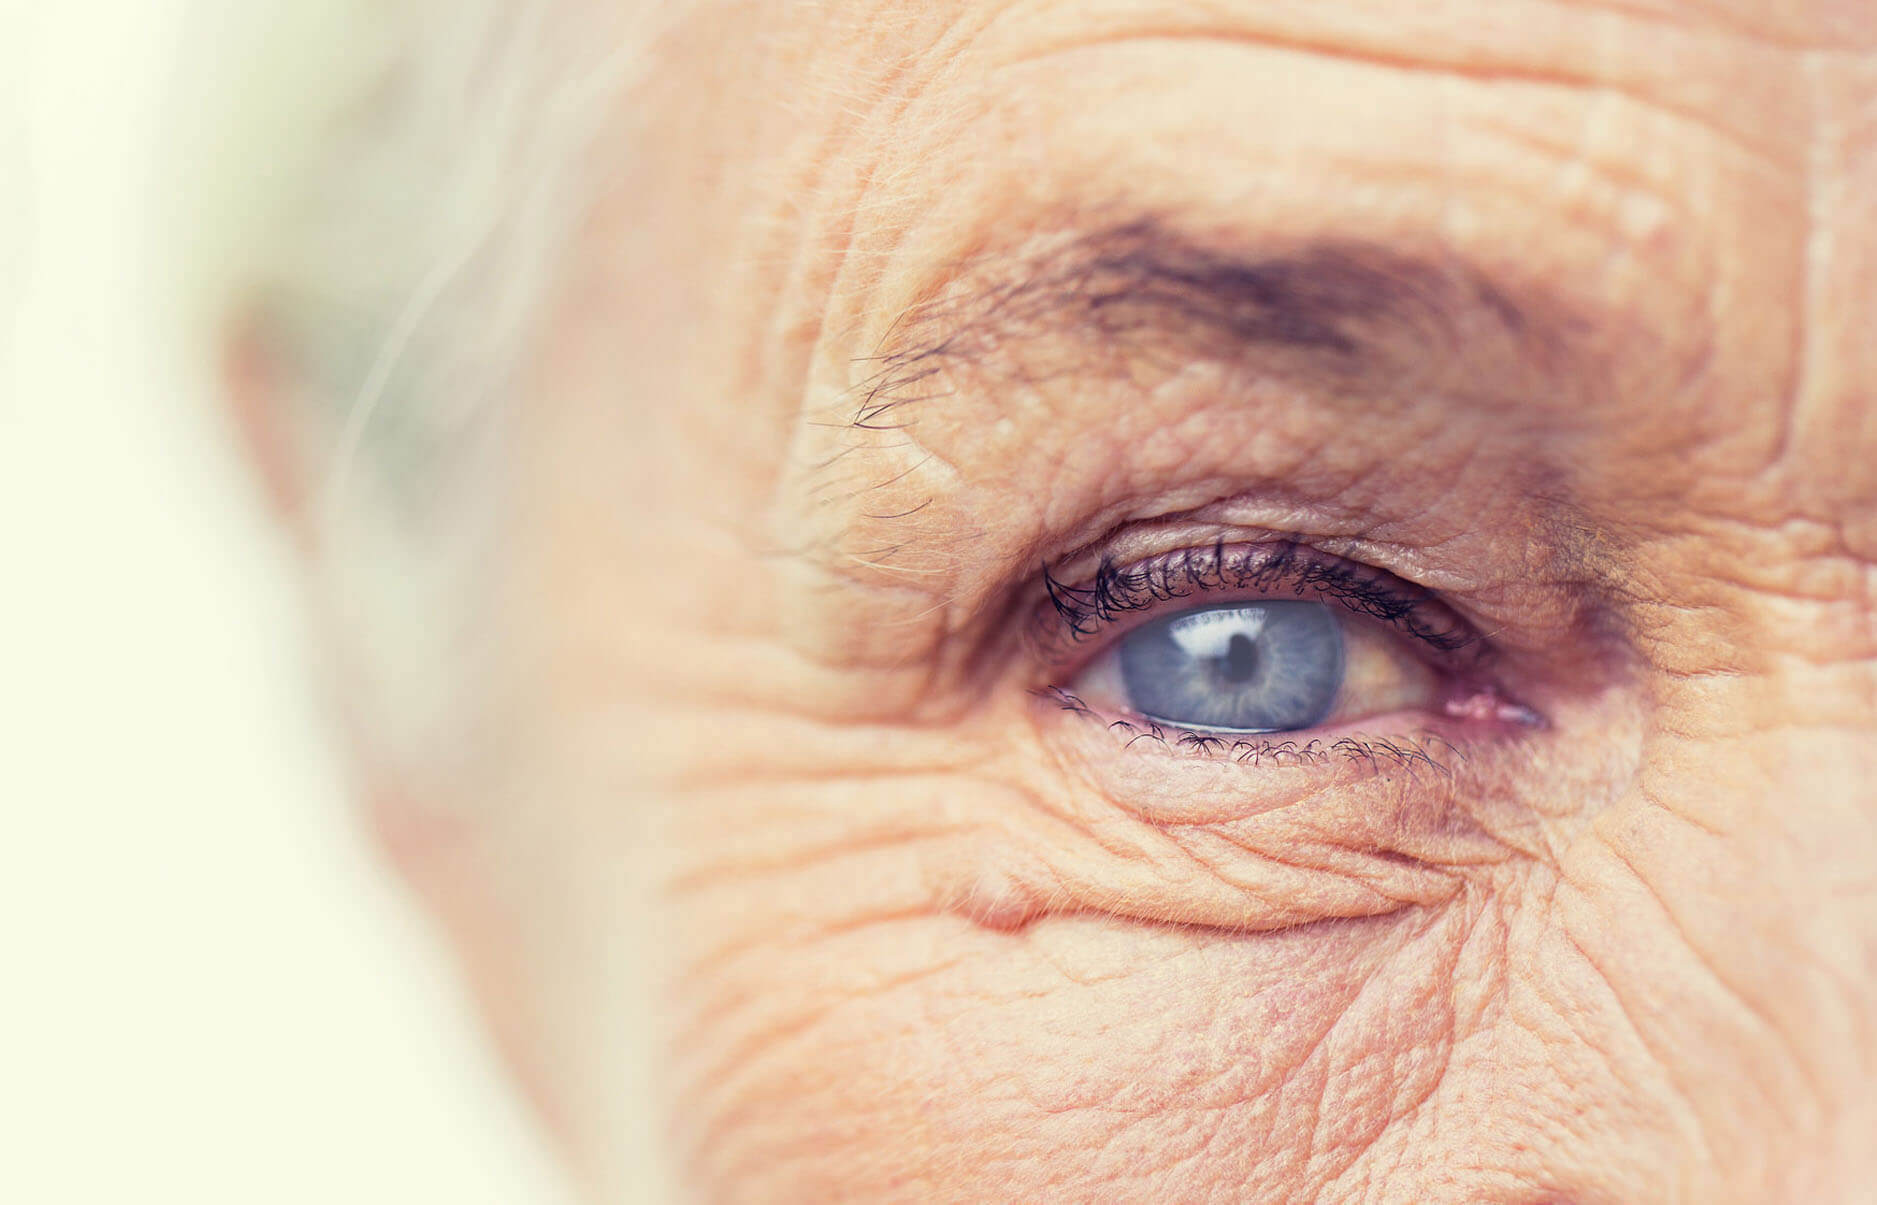 Катаракта, также известная как катаракта у пожилых людей, является одним из распространенных заболеваний этого возраста